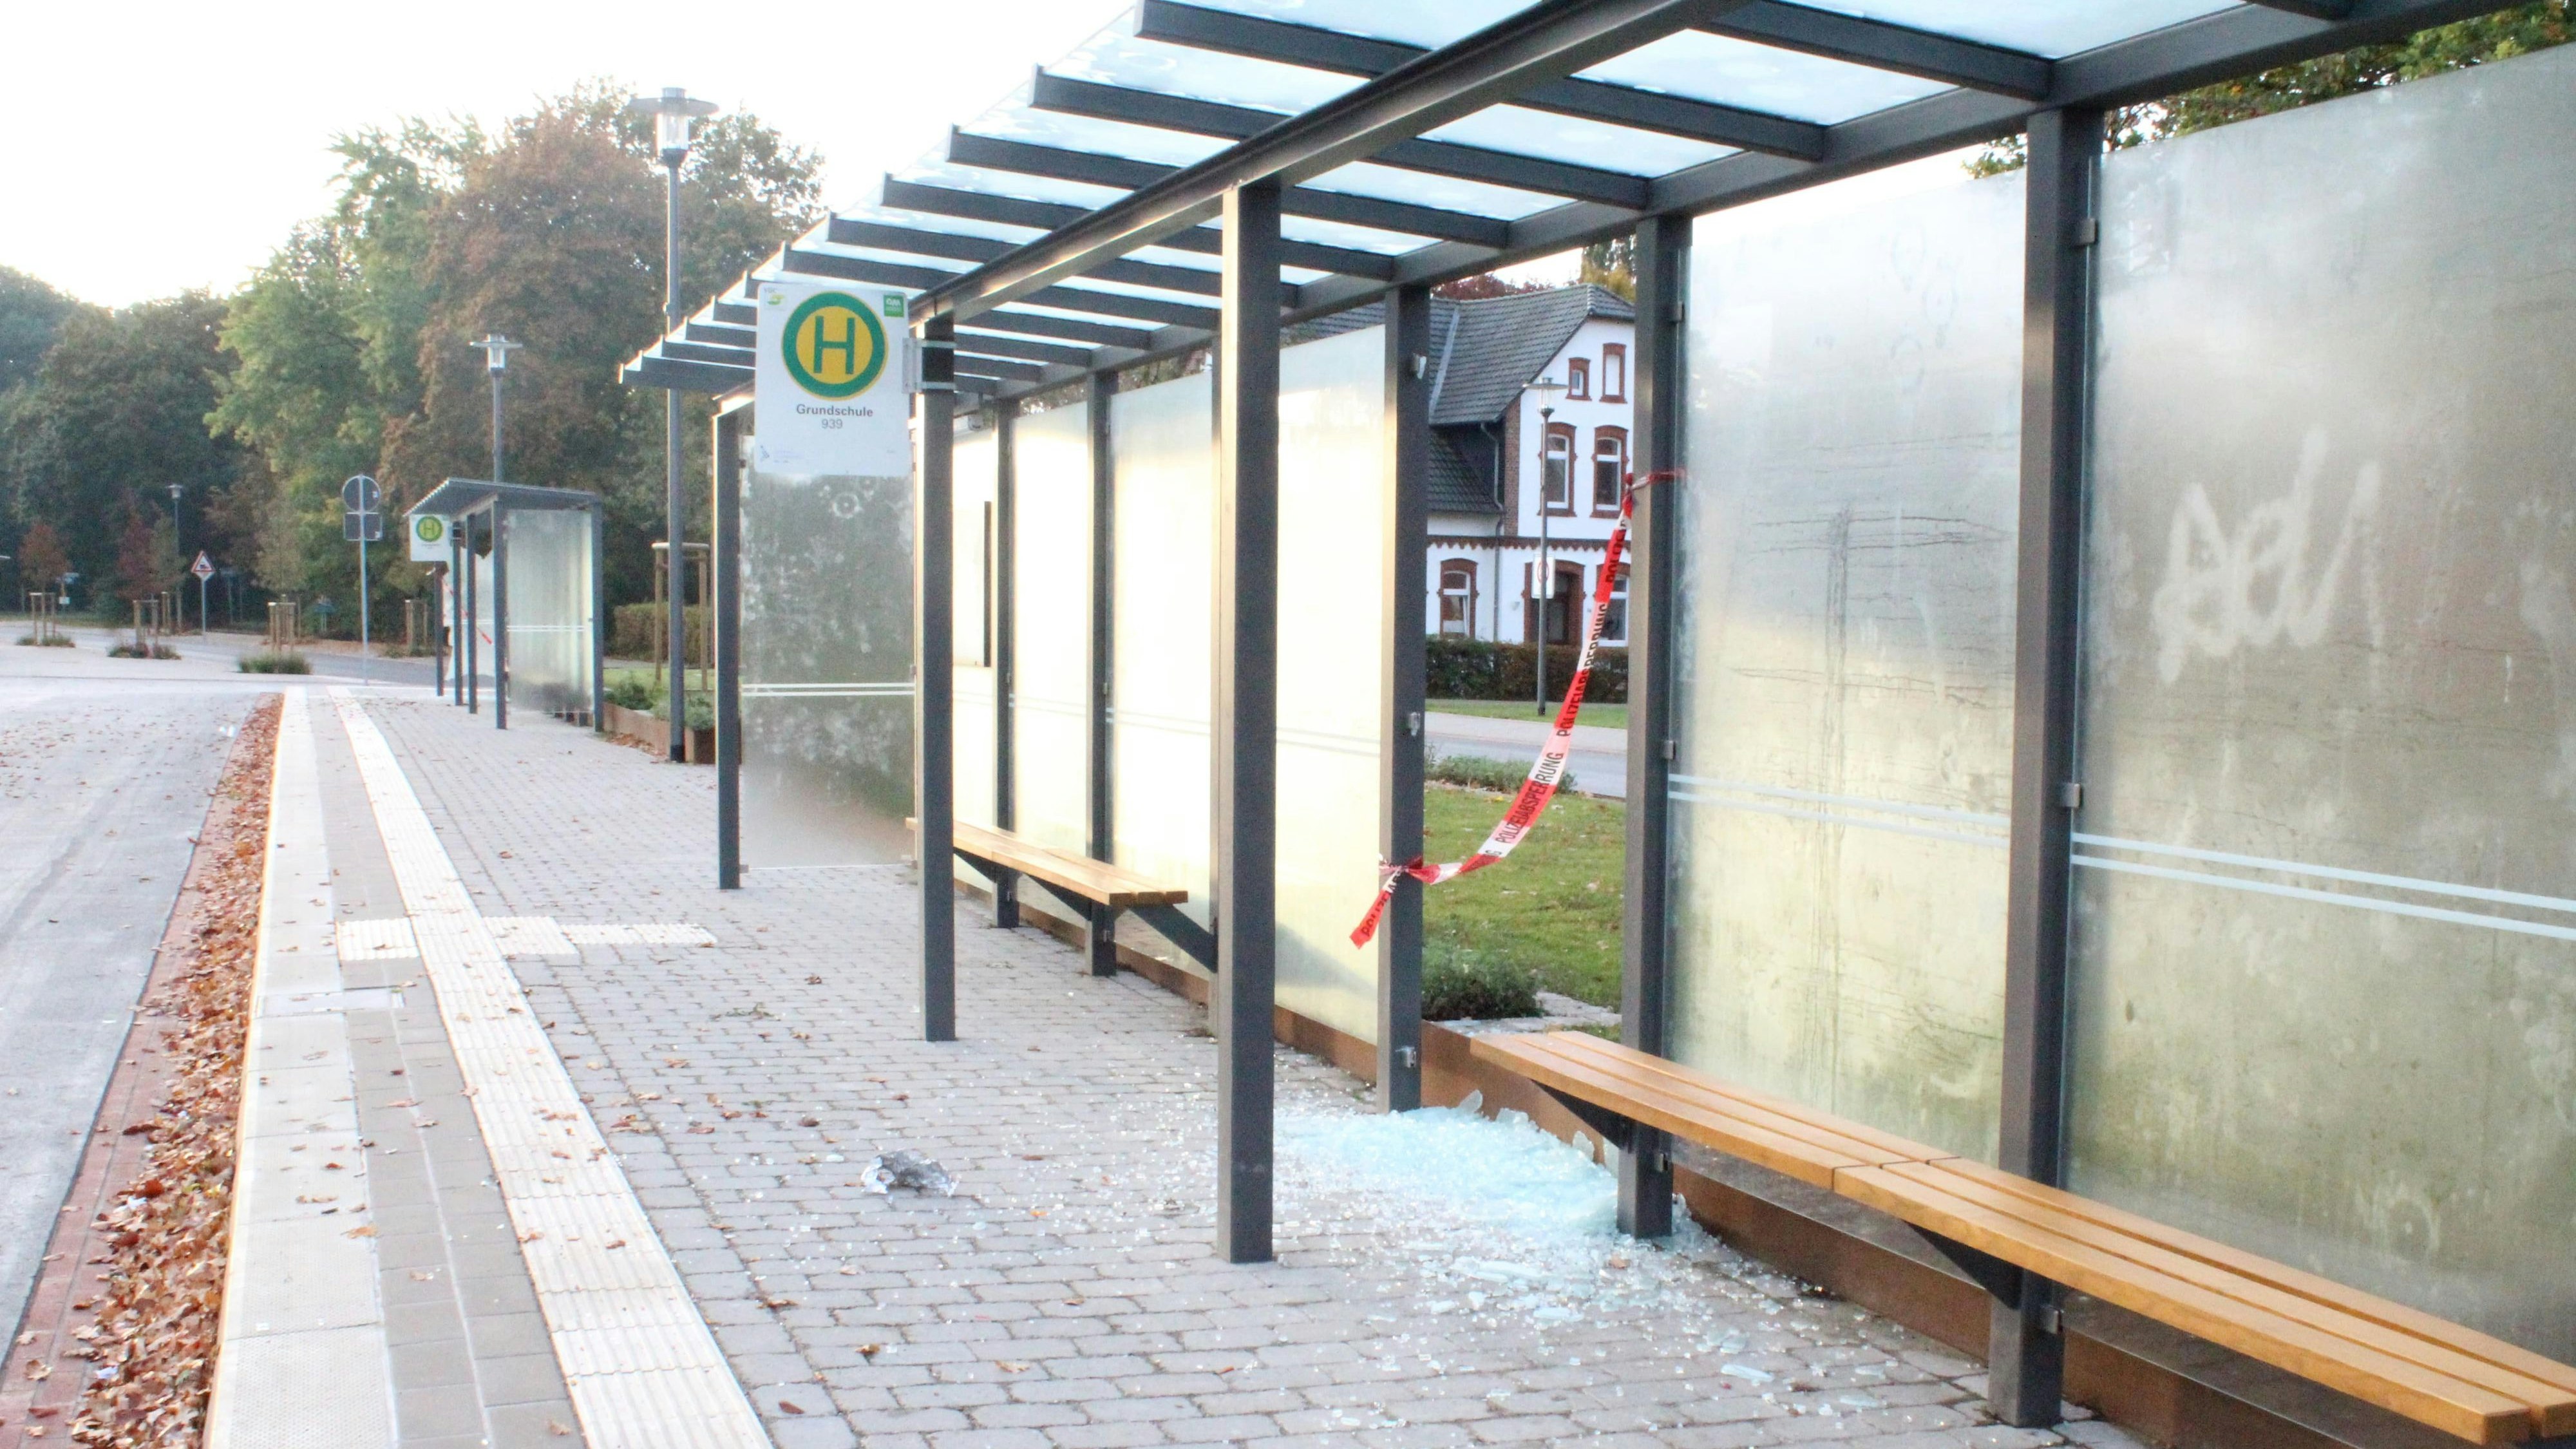 Mutwillig zerstört: Am Busbahnhof in der Schulstraße haben Unbekannte eine Spur der Verwüstung hinterlassen. Foto: Altmann/Gemeinde Essen